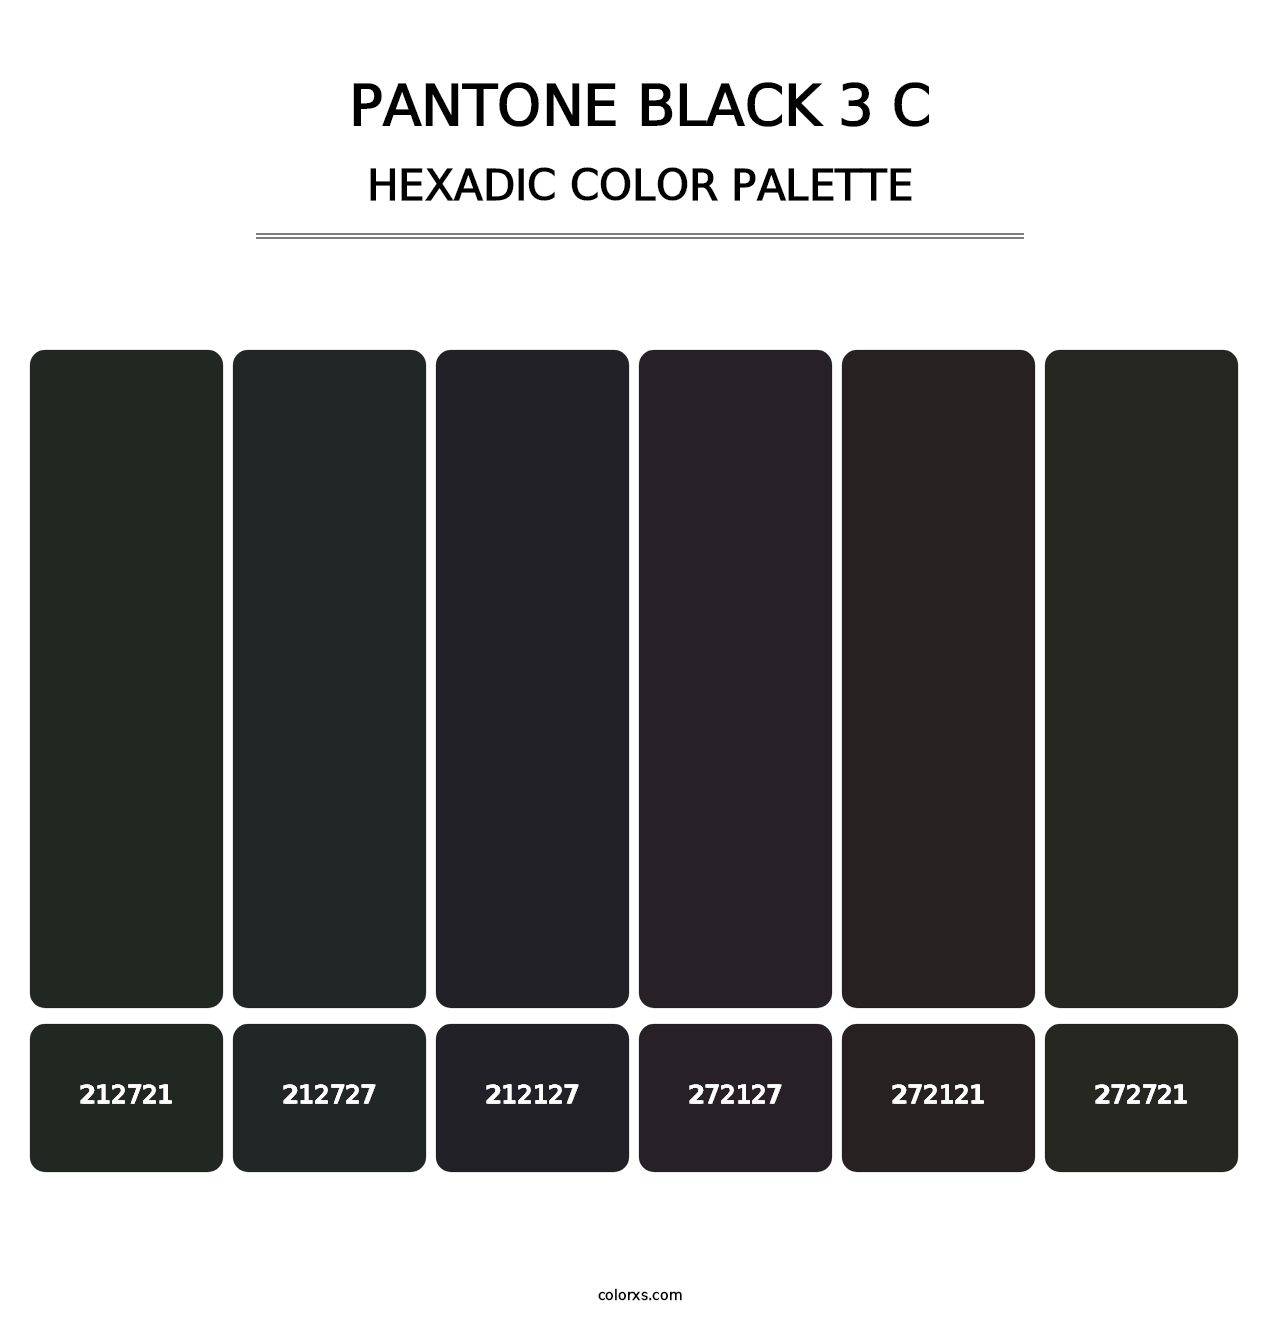 PANTONE Black 3 C - Hexadic Color Palette